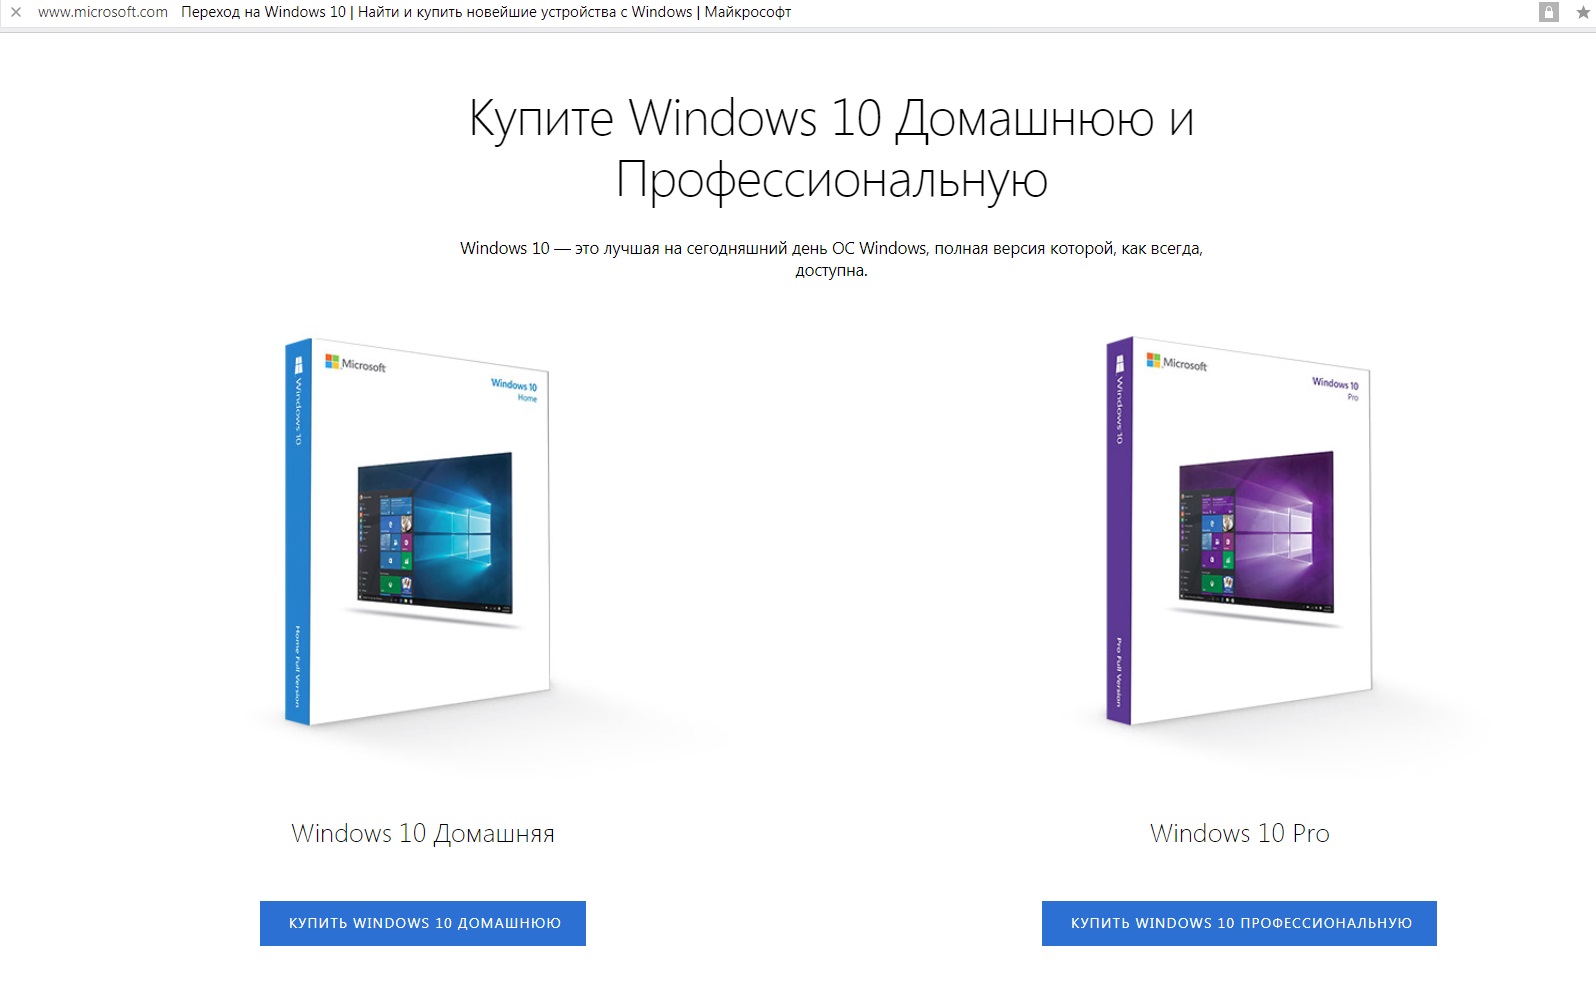 Покупка WIndows 10 на официальном сайте Microsoft